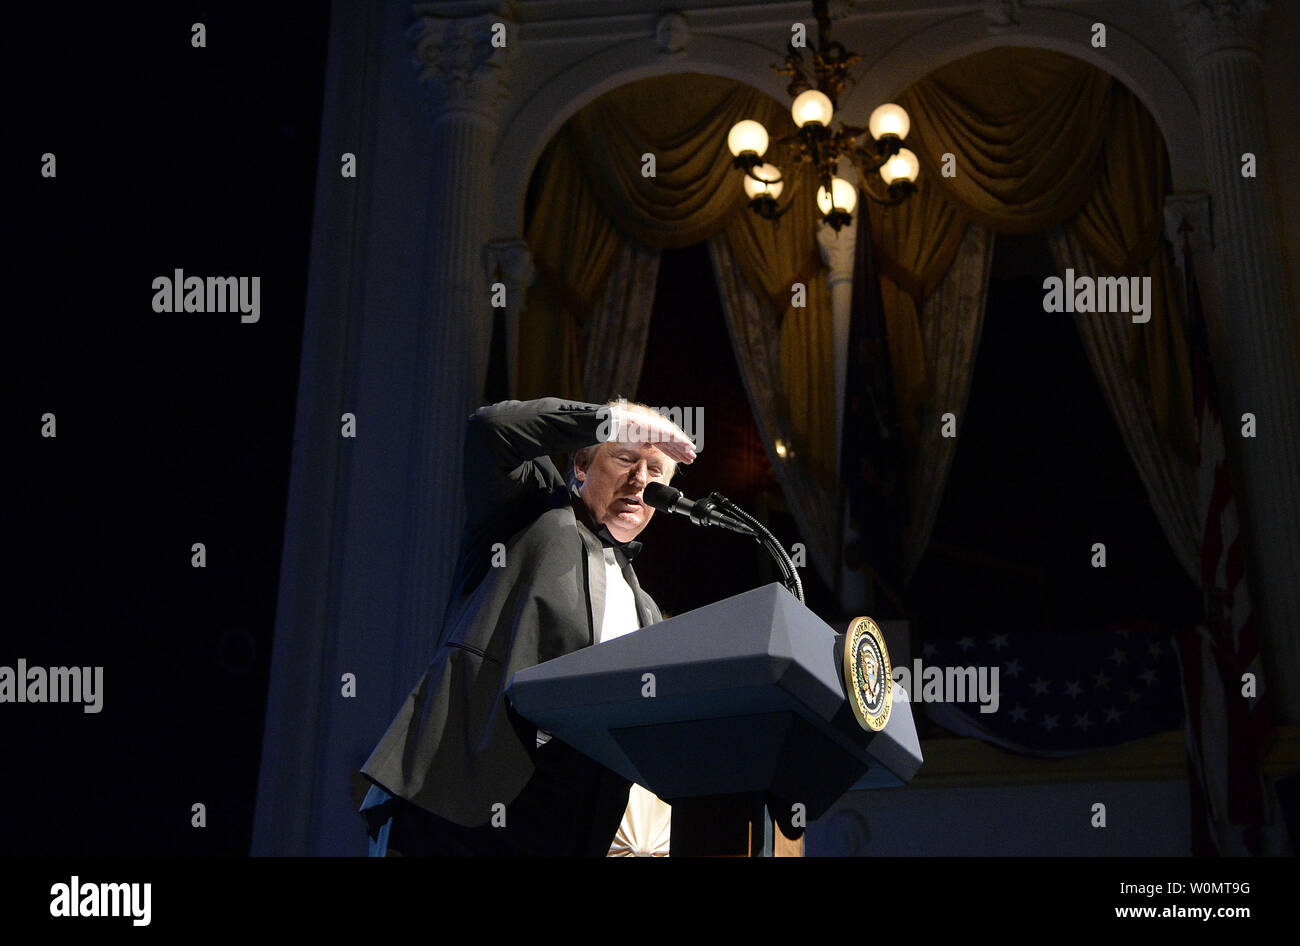 Präsident Donald Trump spricht während der jährlichen Gala im Ford Theater Präsident Abraham Lincoln's Legacy am 4. Juni zu Ehren, 2017 in Washington, DC. Foto von Olivier Douliery/UPI Stockfoto